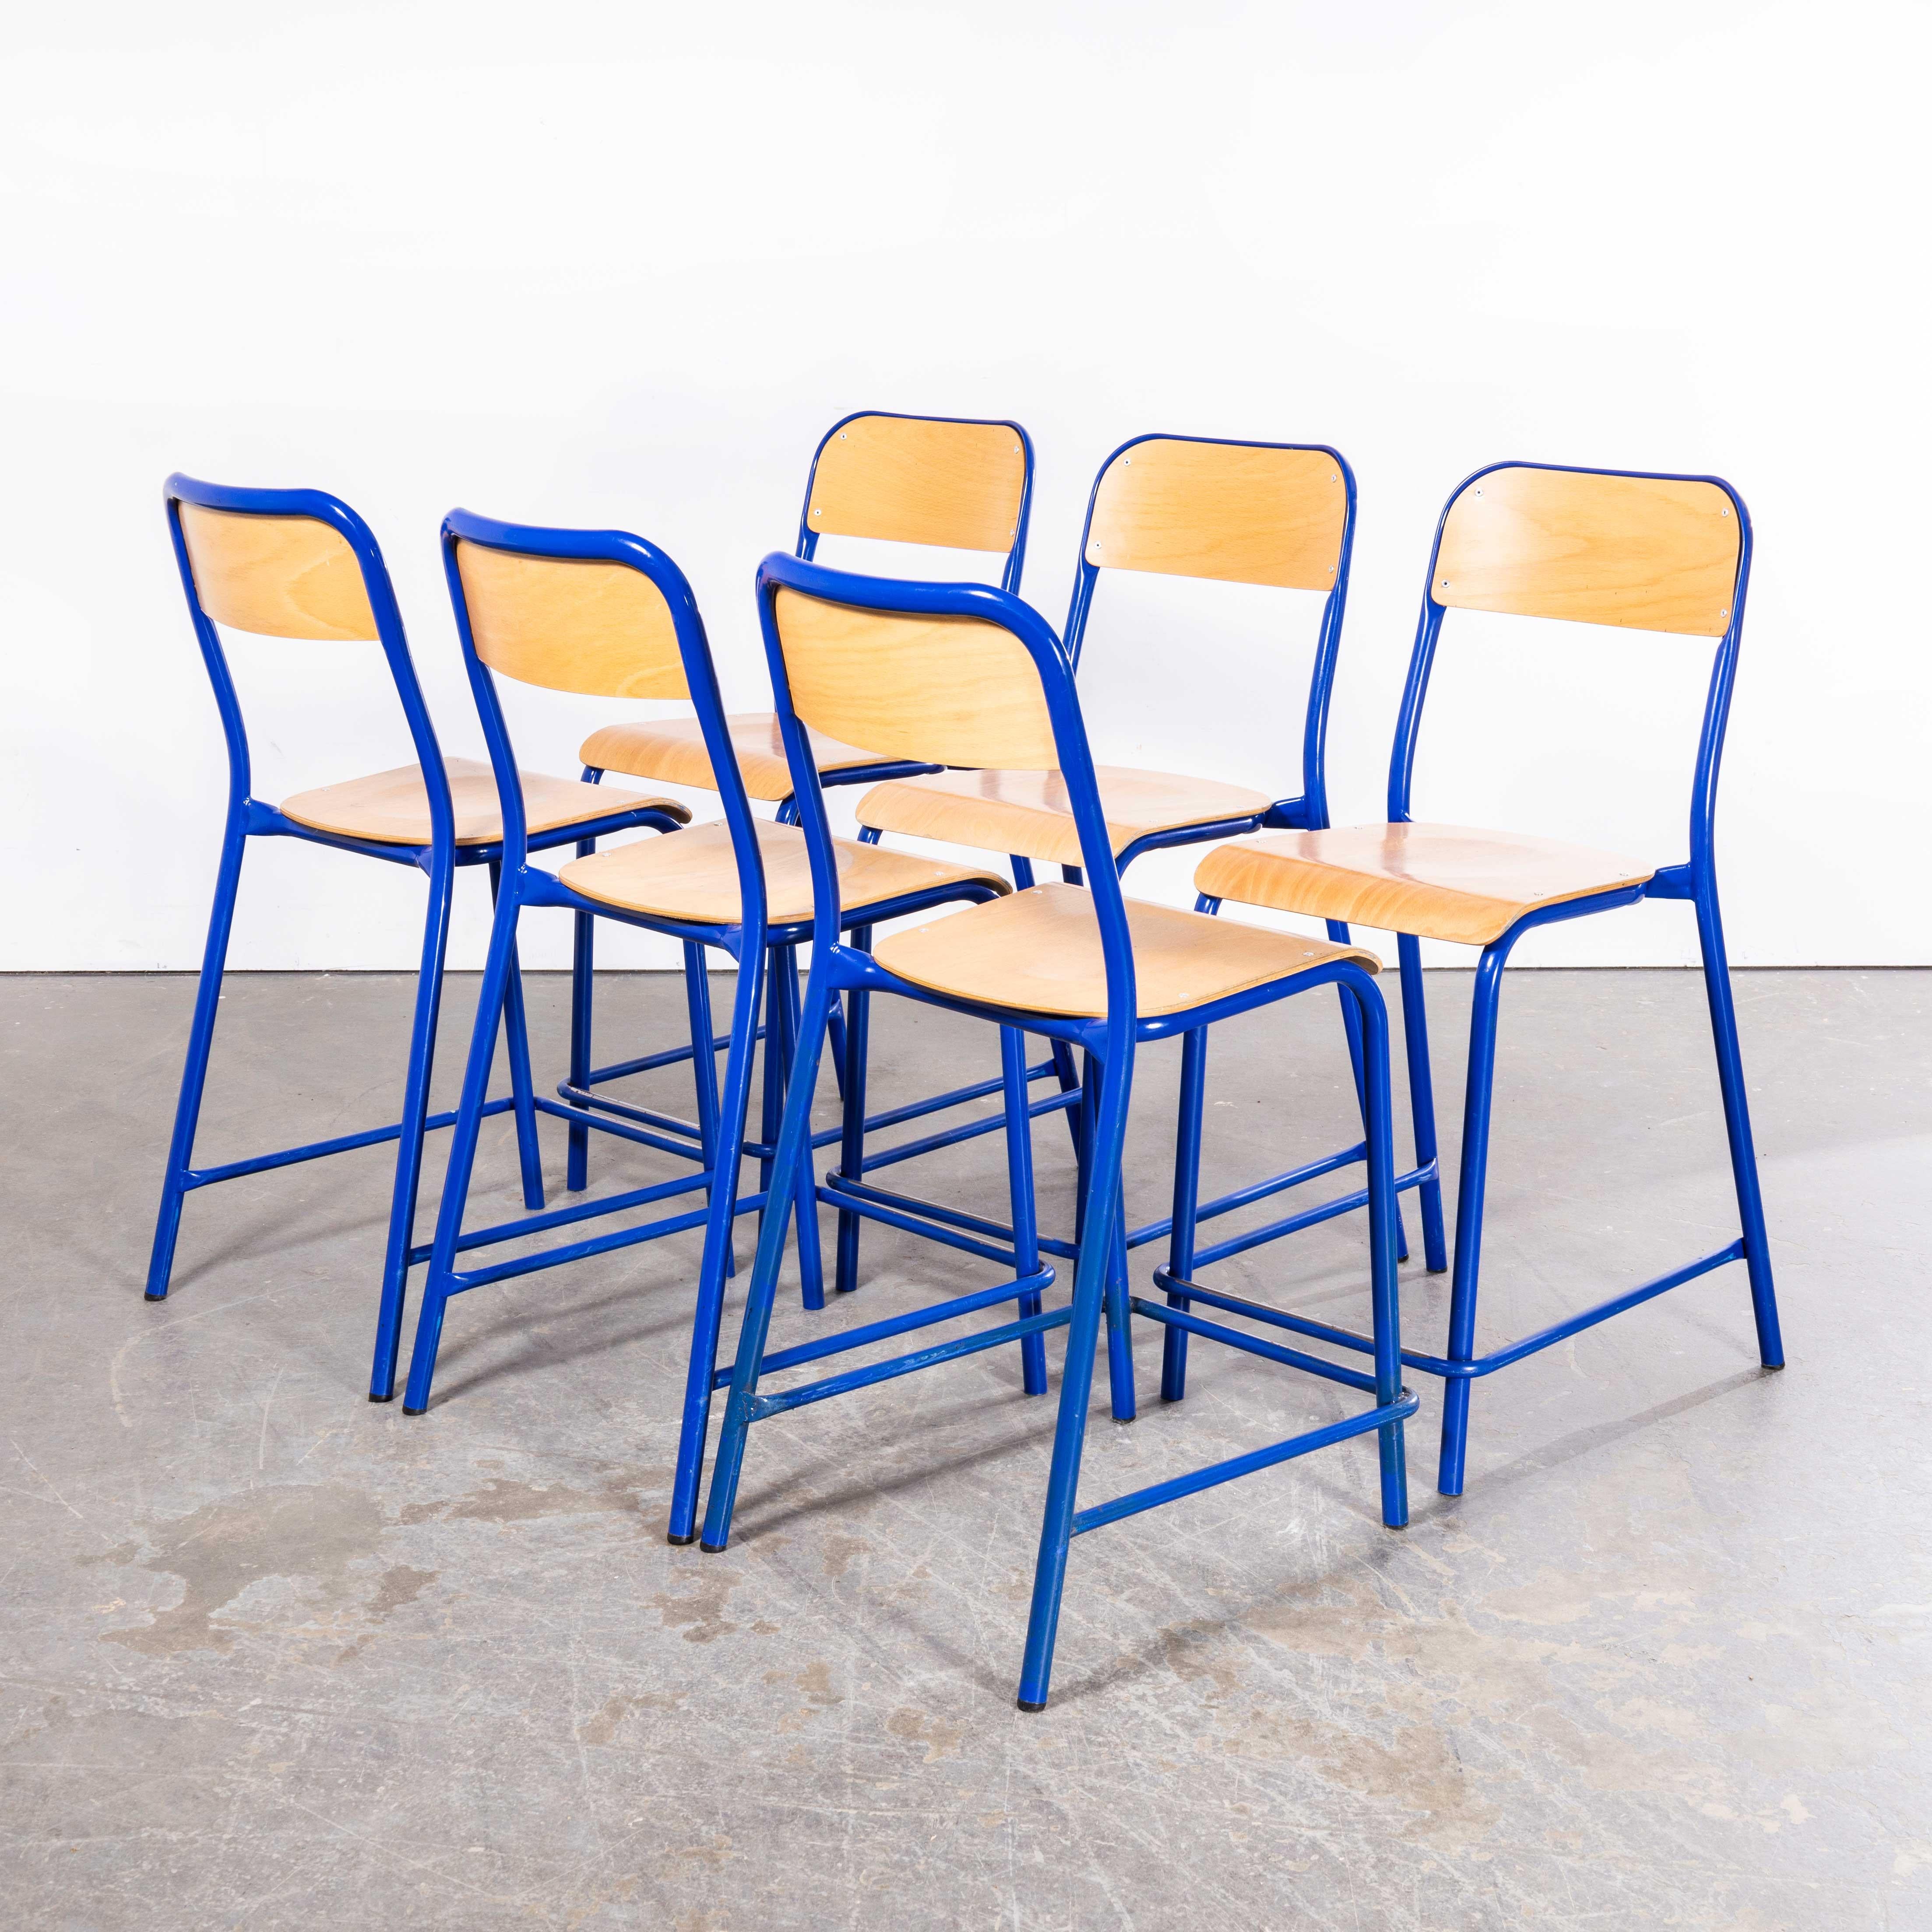 Chaise de bar empilable en D à dossier haut Mullca des années 1970 - Bleu - Lot de six
1970's French Mullca Stacking D Back High Bar Chair - Blue - Set Of Six. Robert Muller et Gaston Cavaillon ont créé en 1947 la société qui a développé la chaise